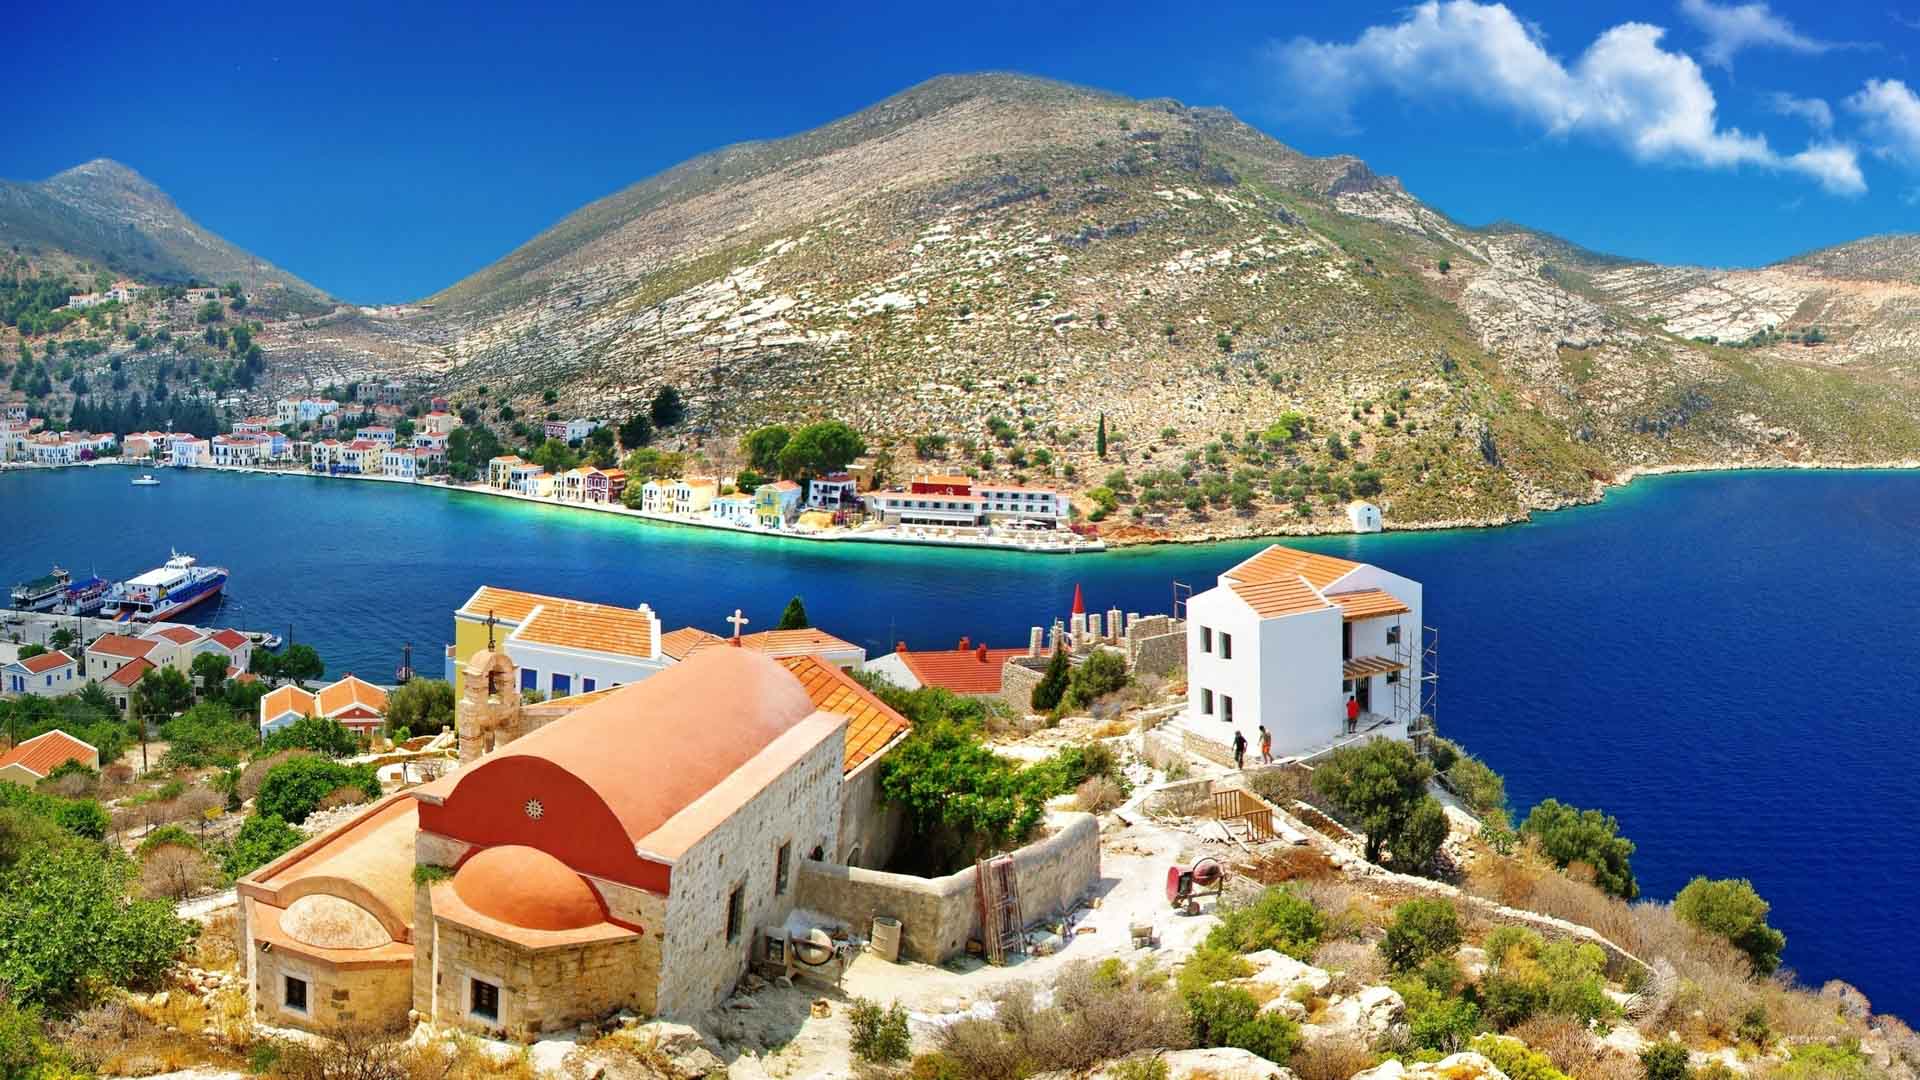 grecia fondos de pantalla hd,paisaje natural,turismo,pueblo,bahía,pueblo de montaña